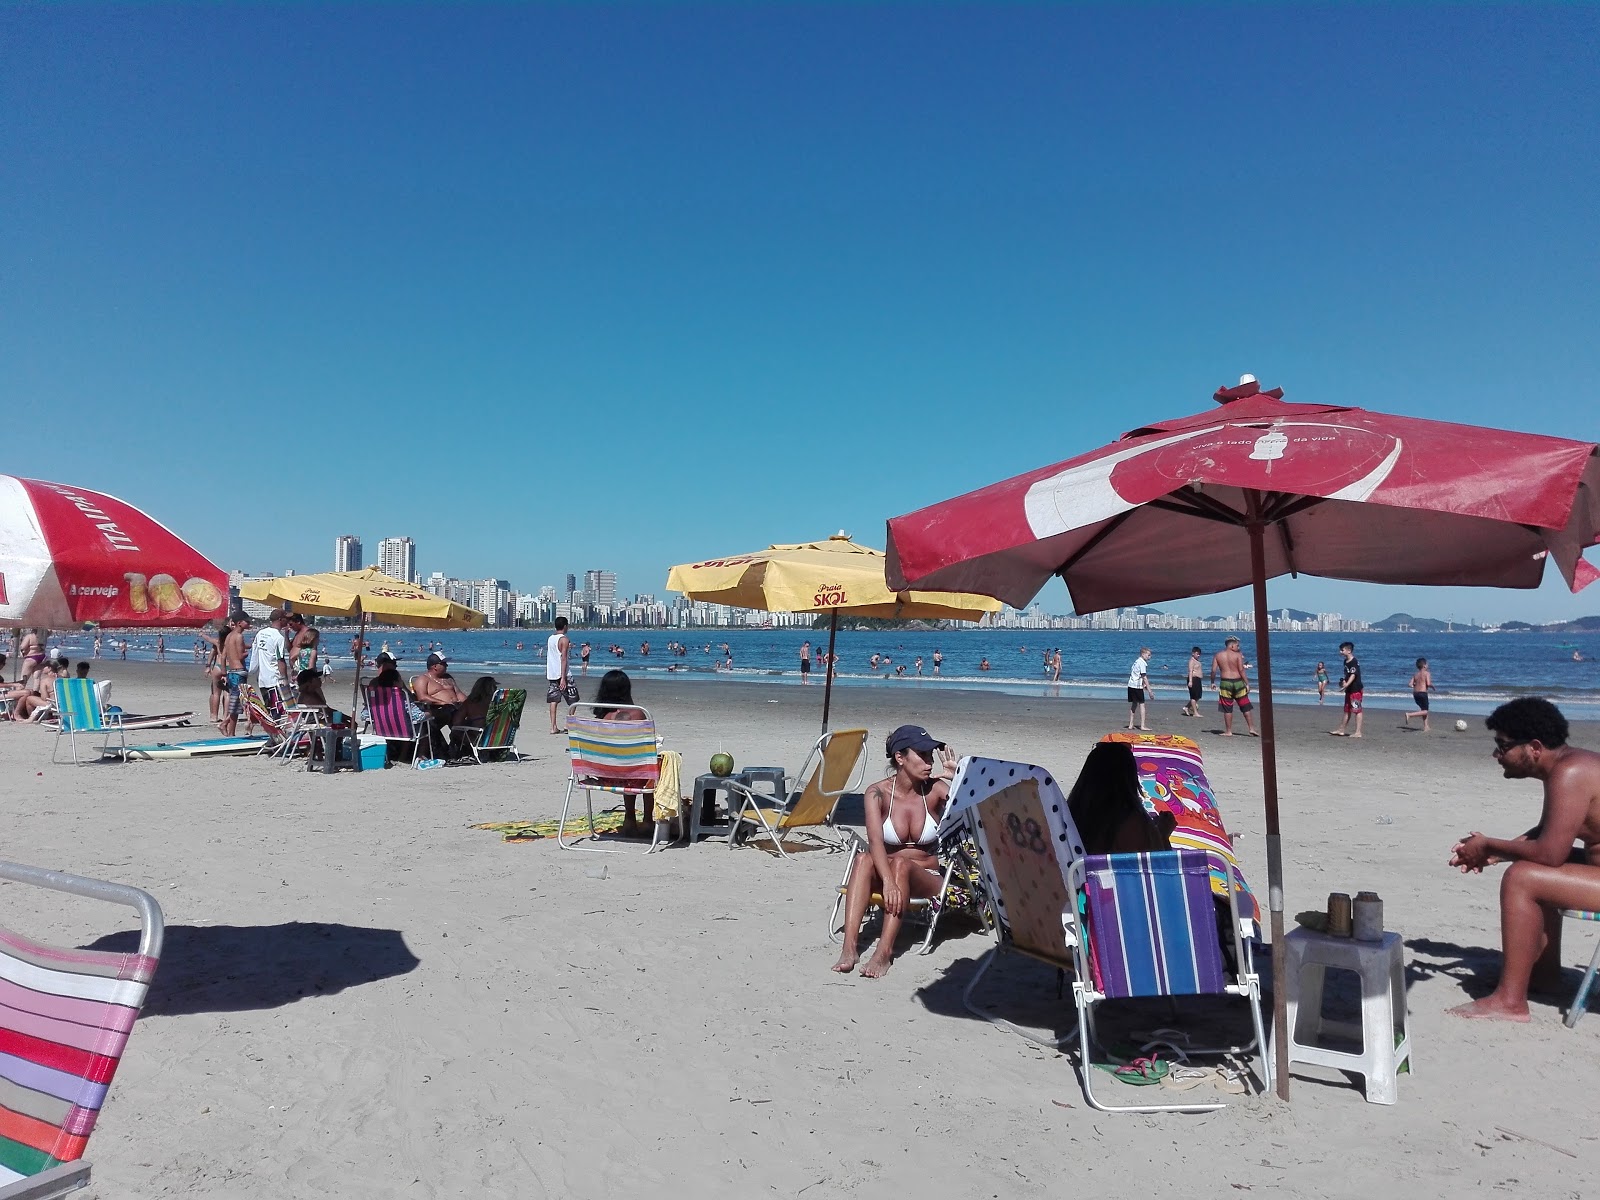 Praia dos Milionarios'in fotoğrafı parlak ince kum yüzey ile